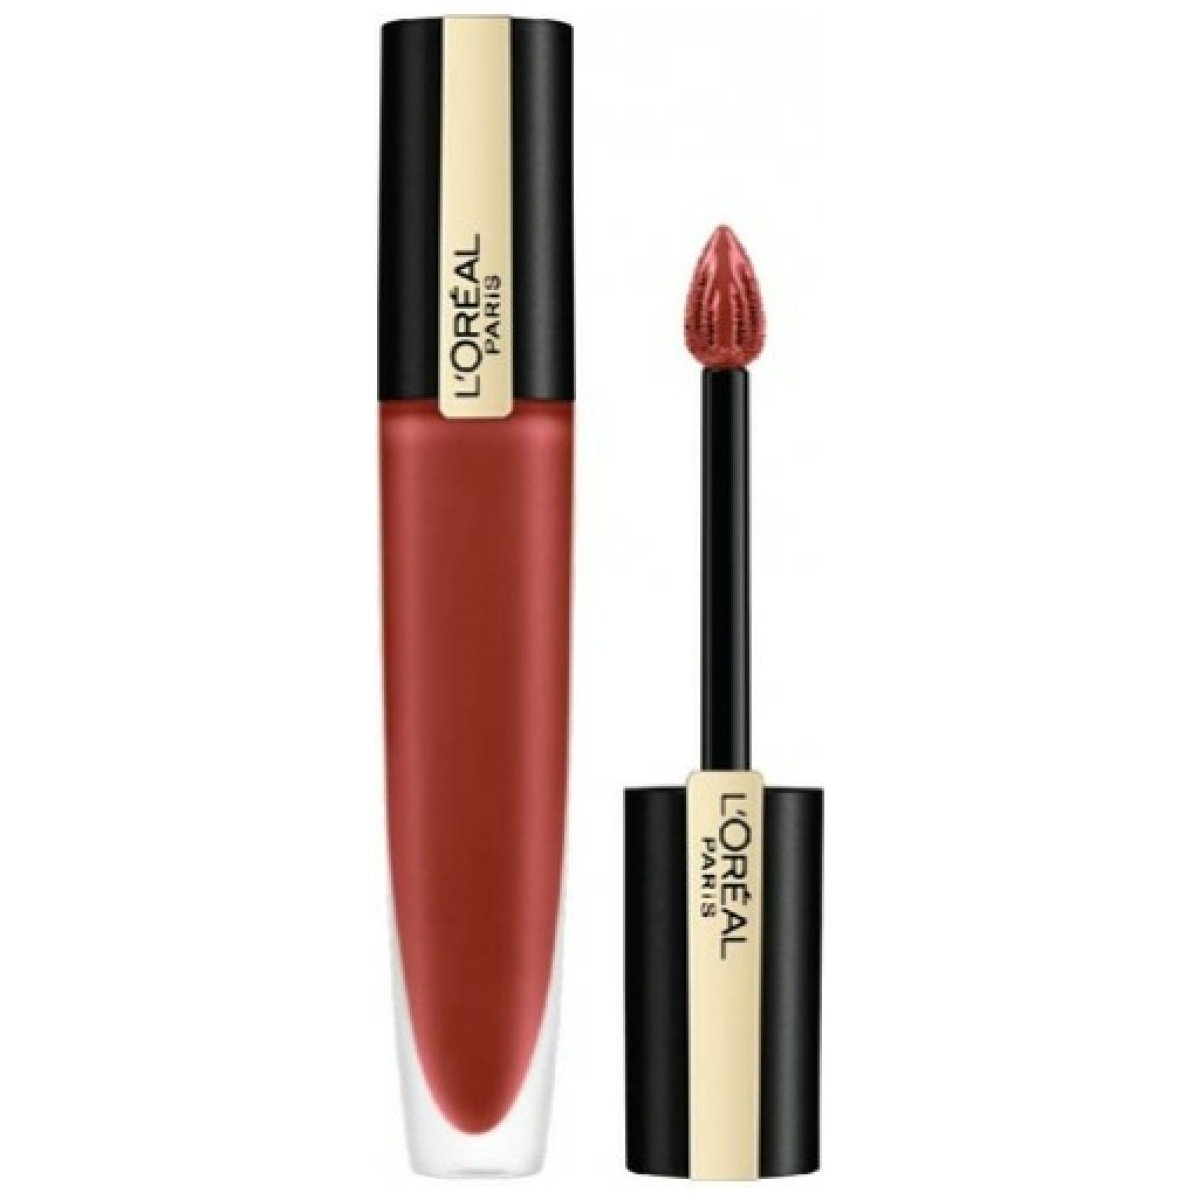 L'Oreal Paris Rouge Signature Matte Liquid Lipstick - 130 I Amaze